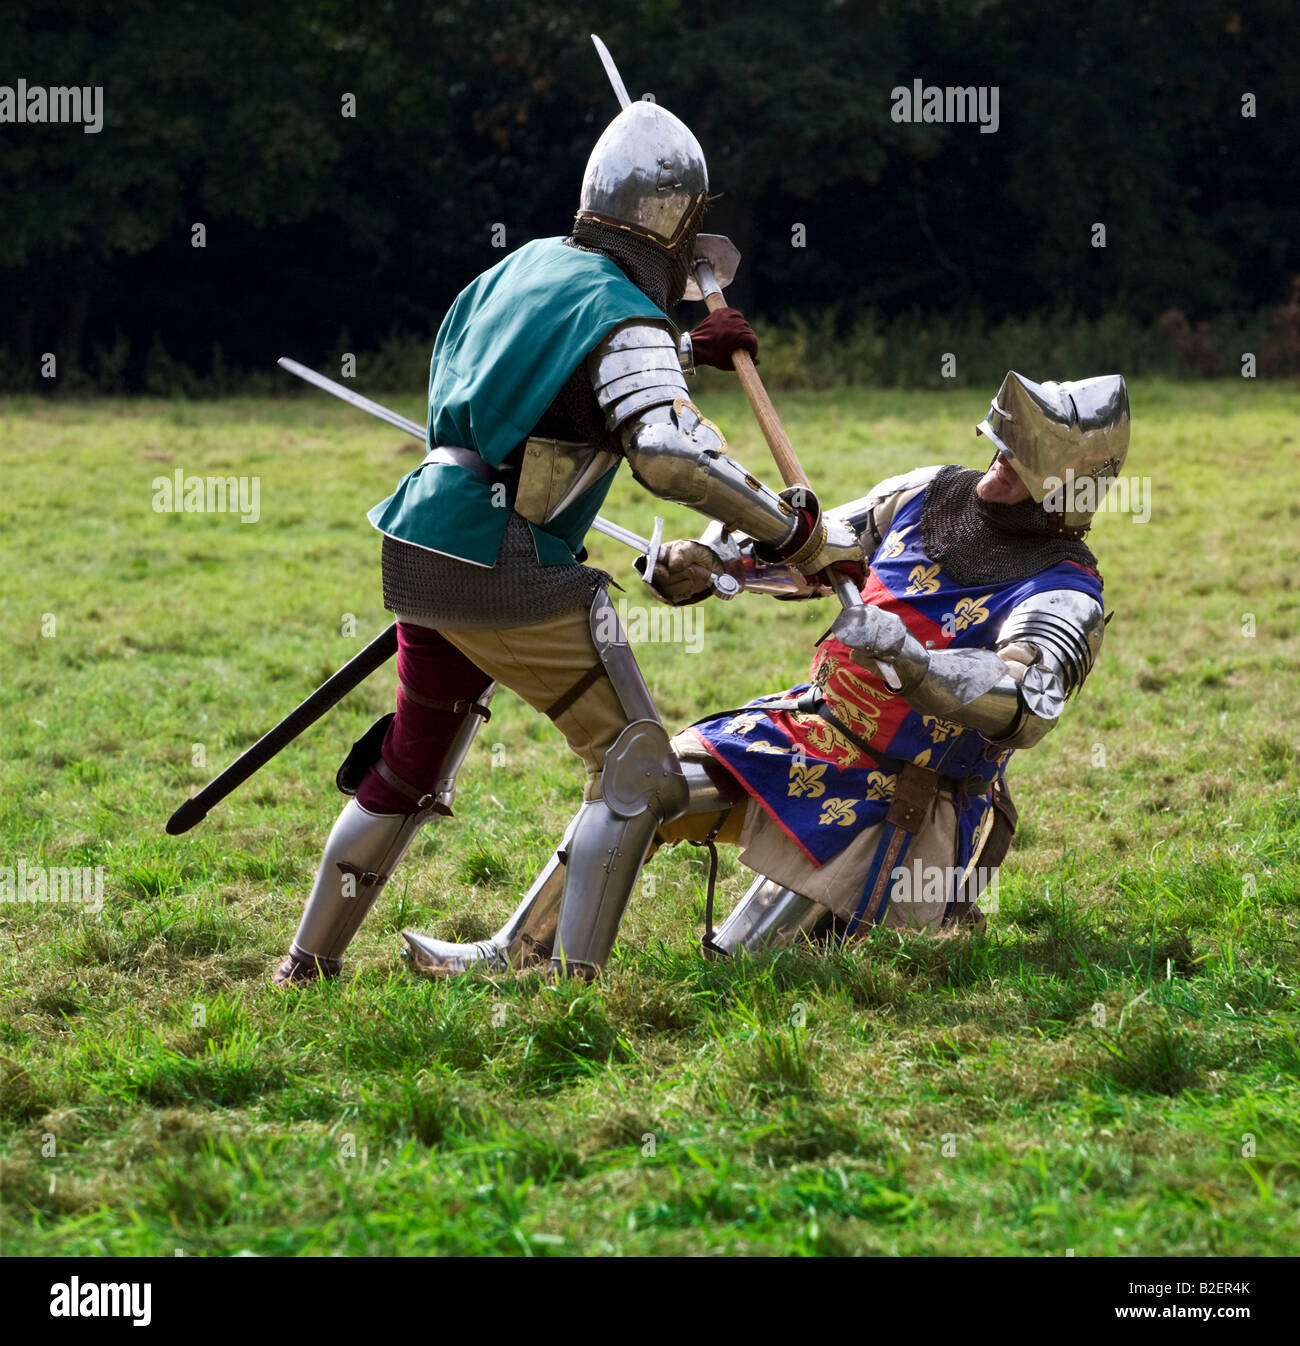 Caballeros medievales en un combate mortal - una nueva promulgación sólo para uso editorial. Foto de stock